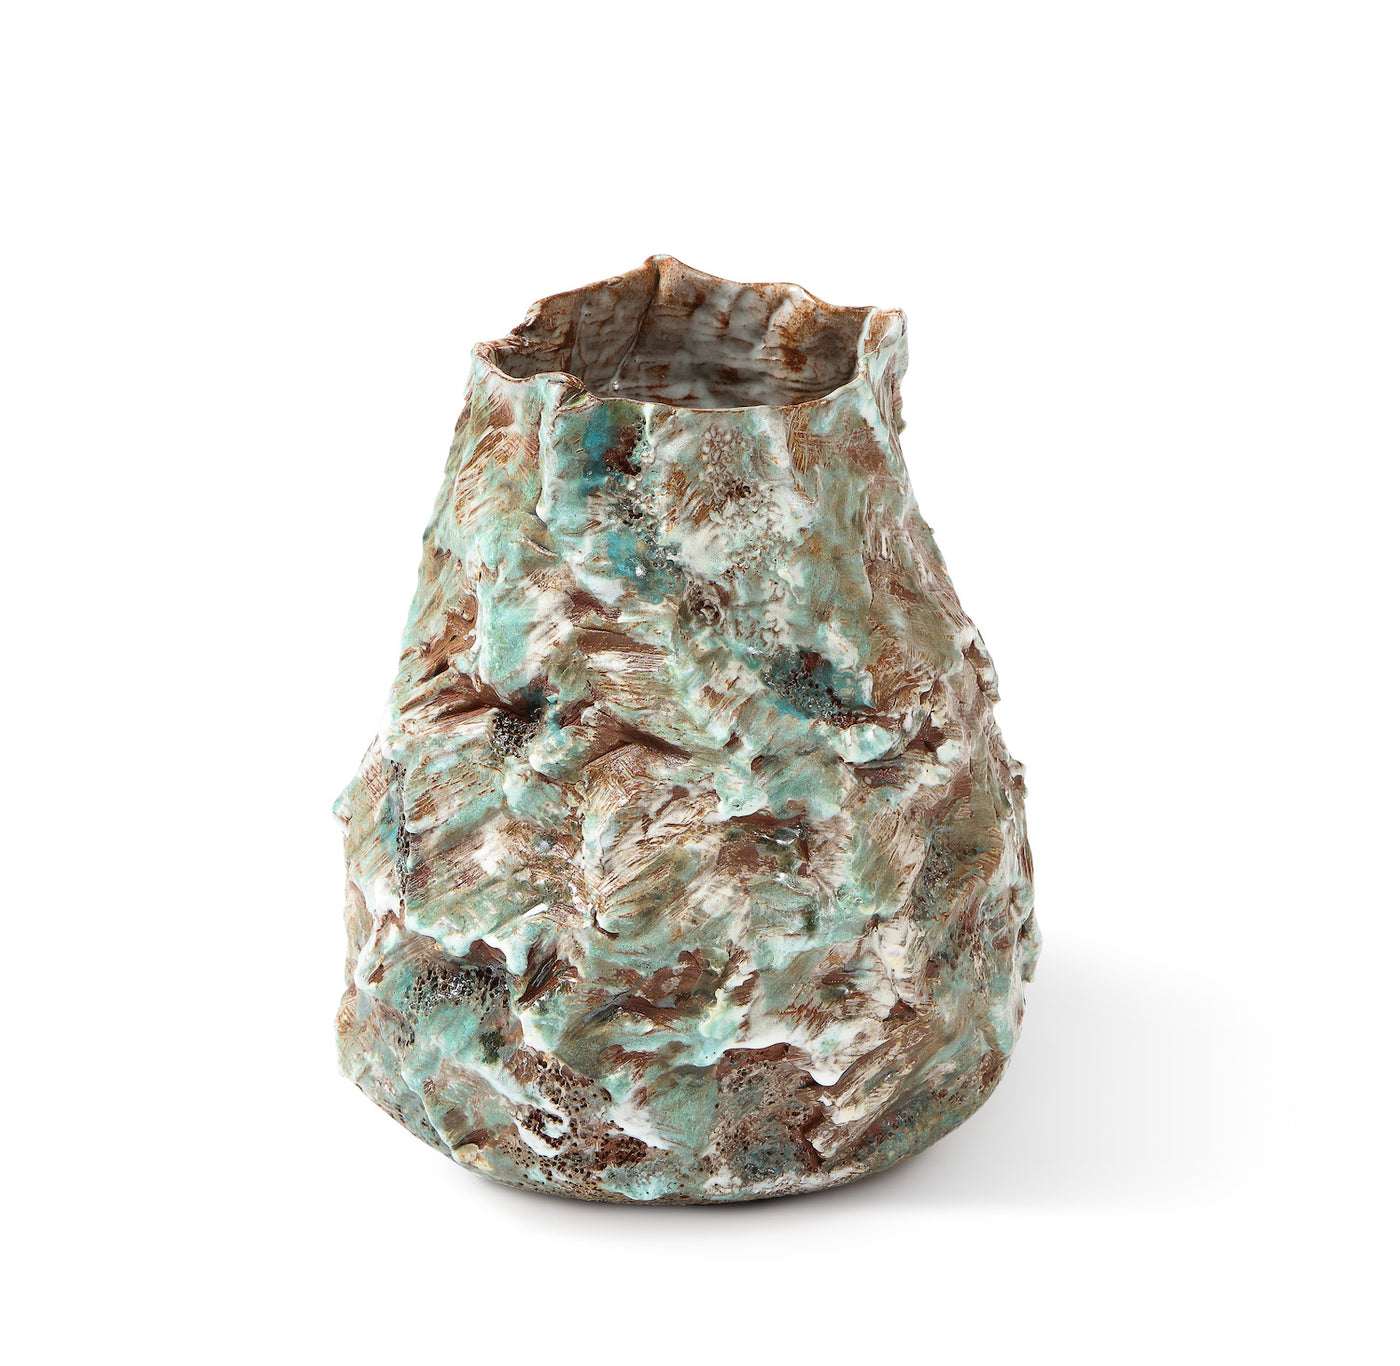 XL Sculptural Vase #3 by Dena Zemsky